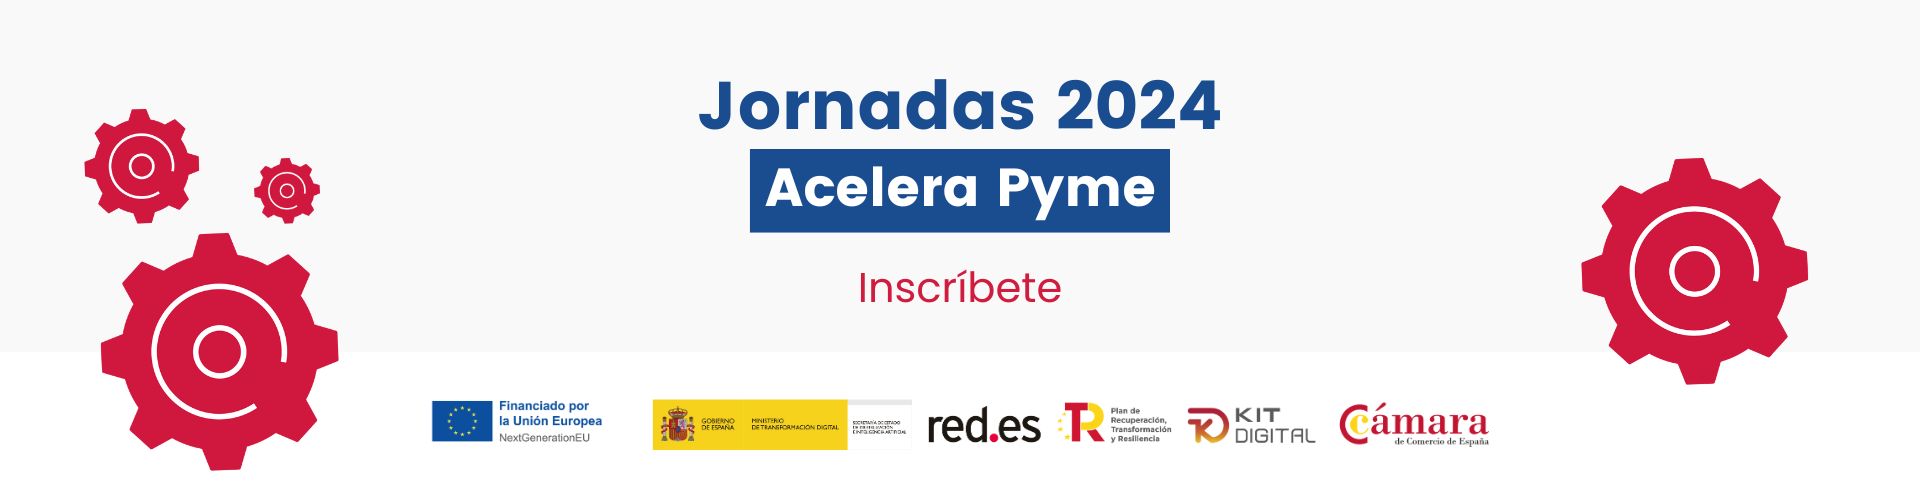 Jornadas 2024 Acelera Pyme. Inscríbete